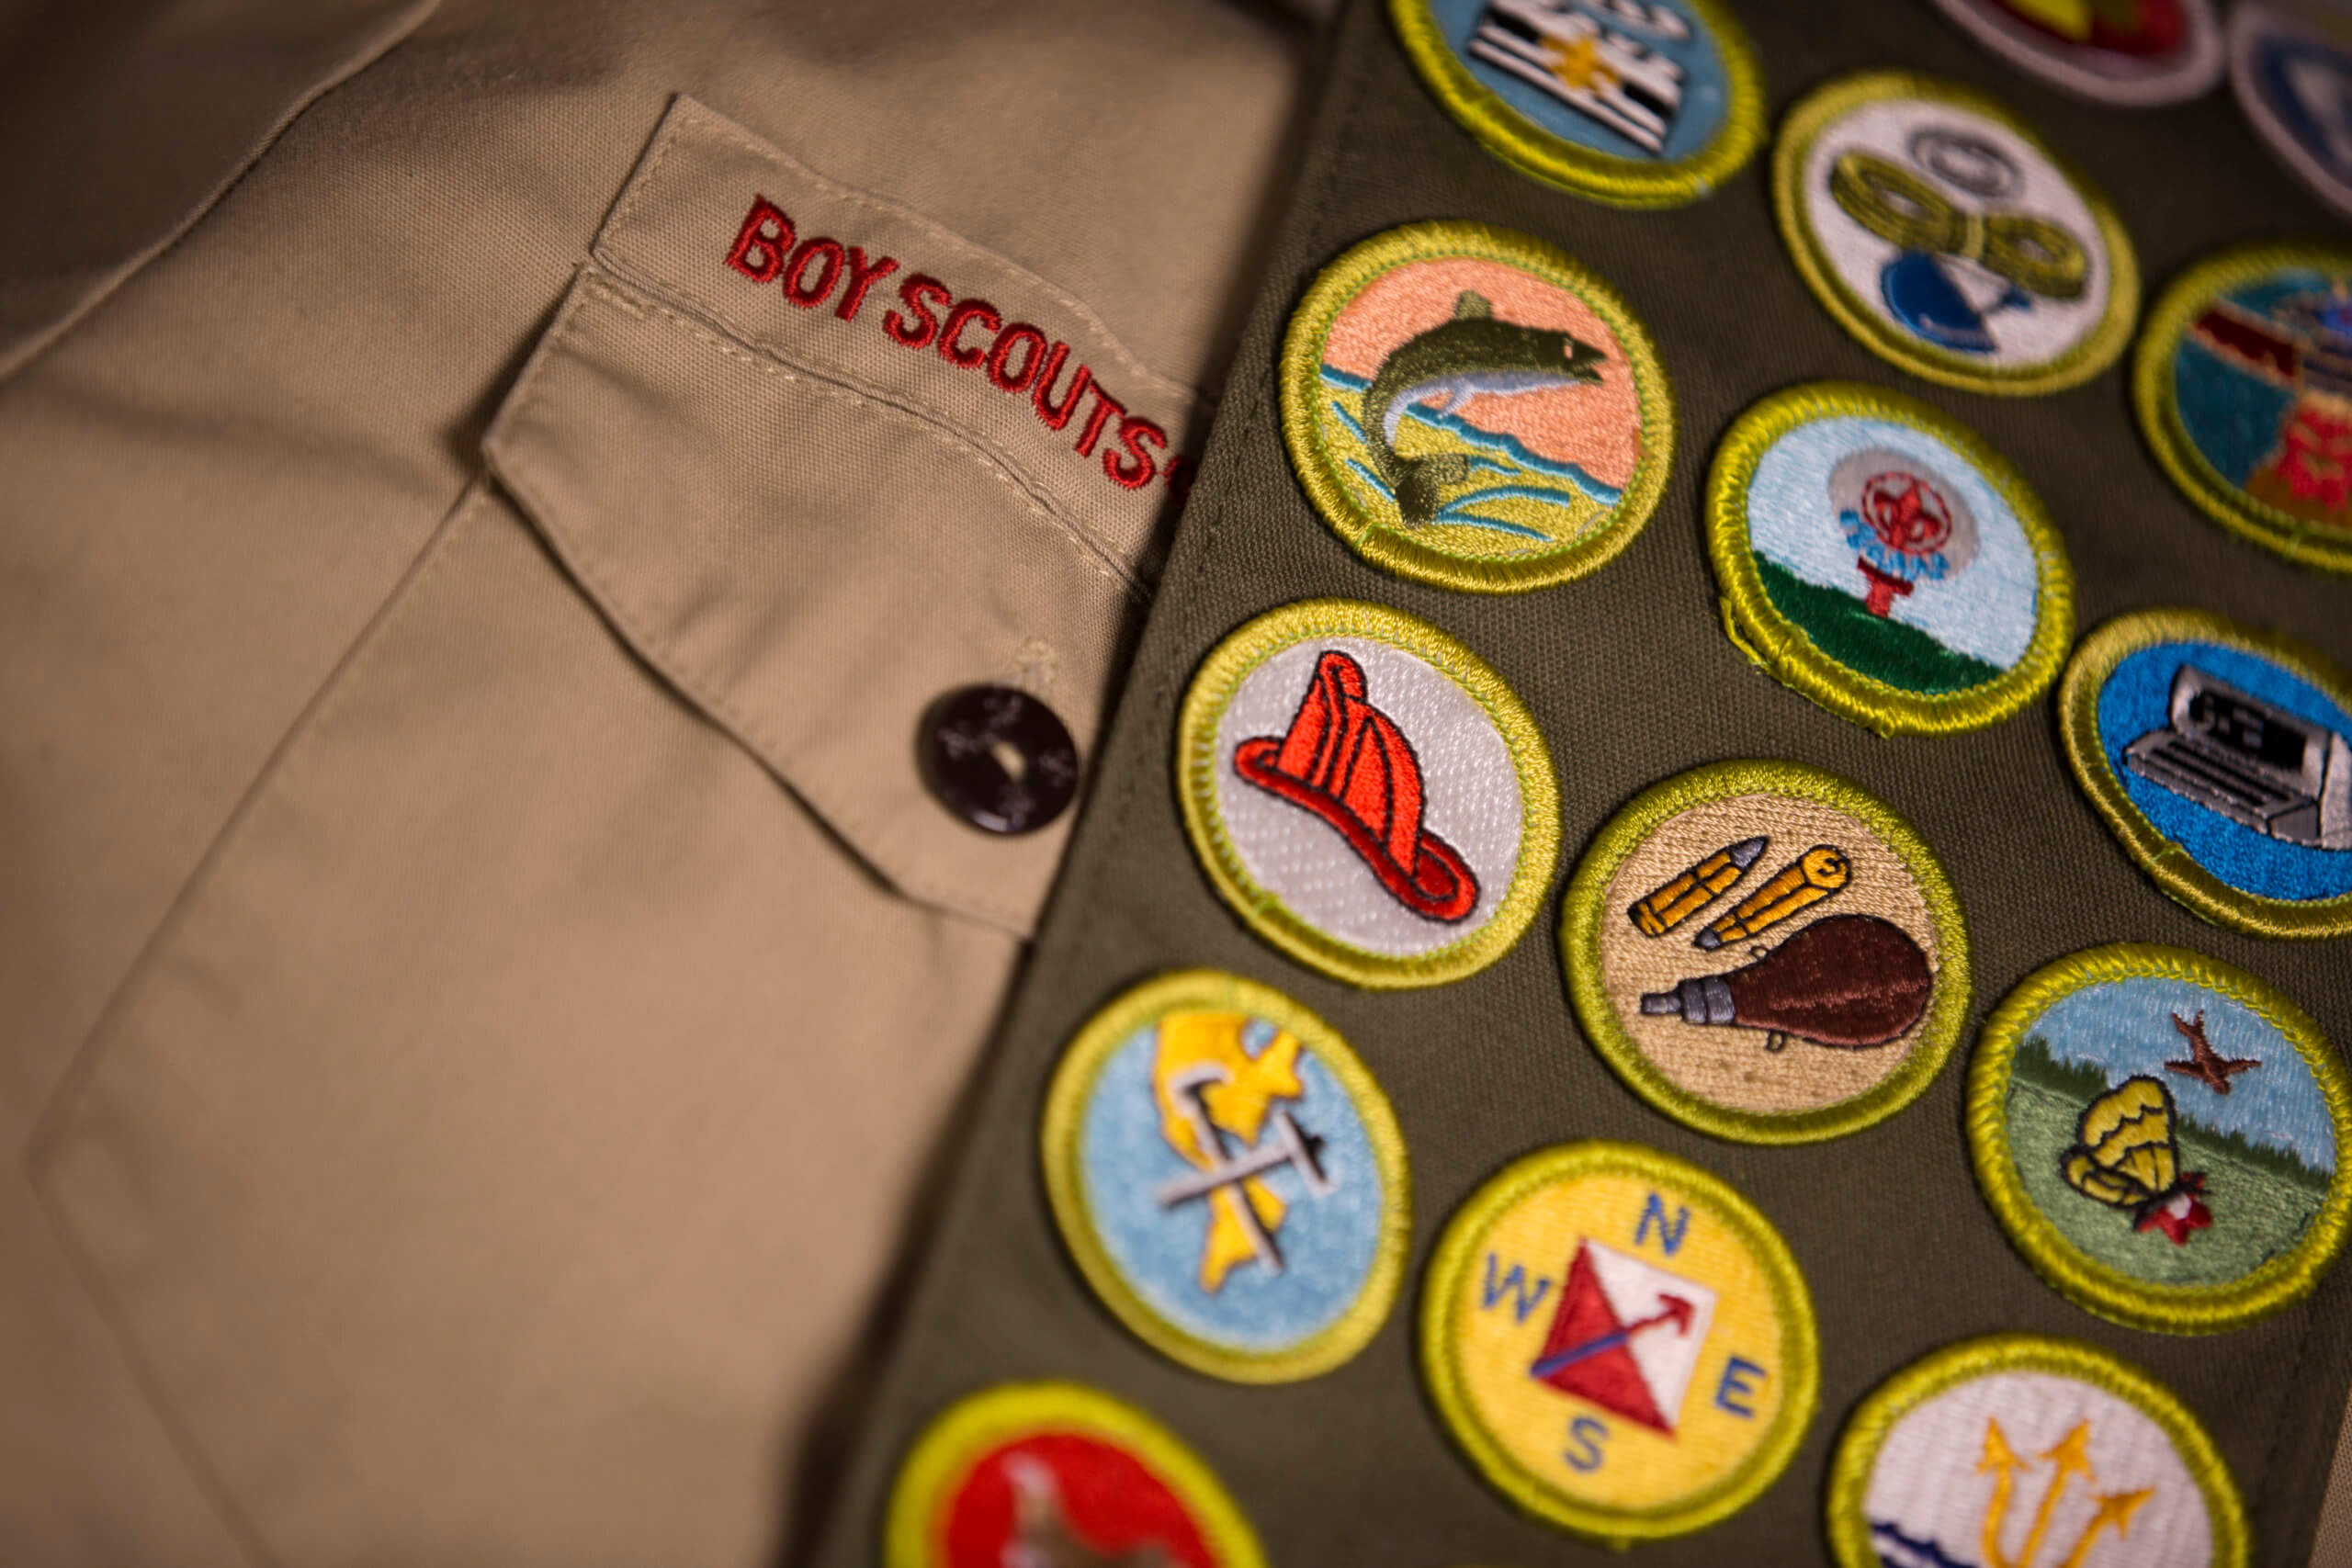 Boy Scouts uniform and badges.